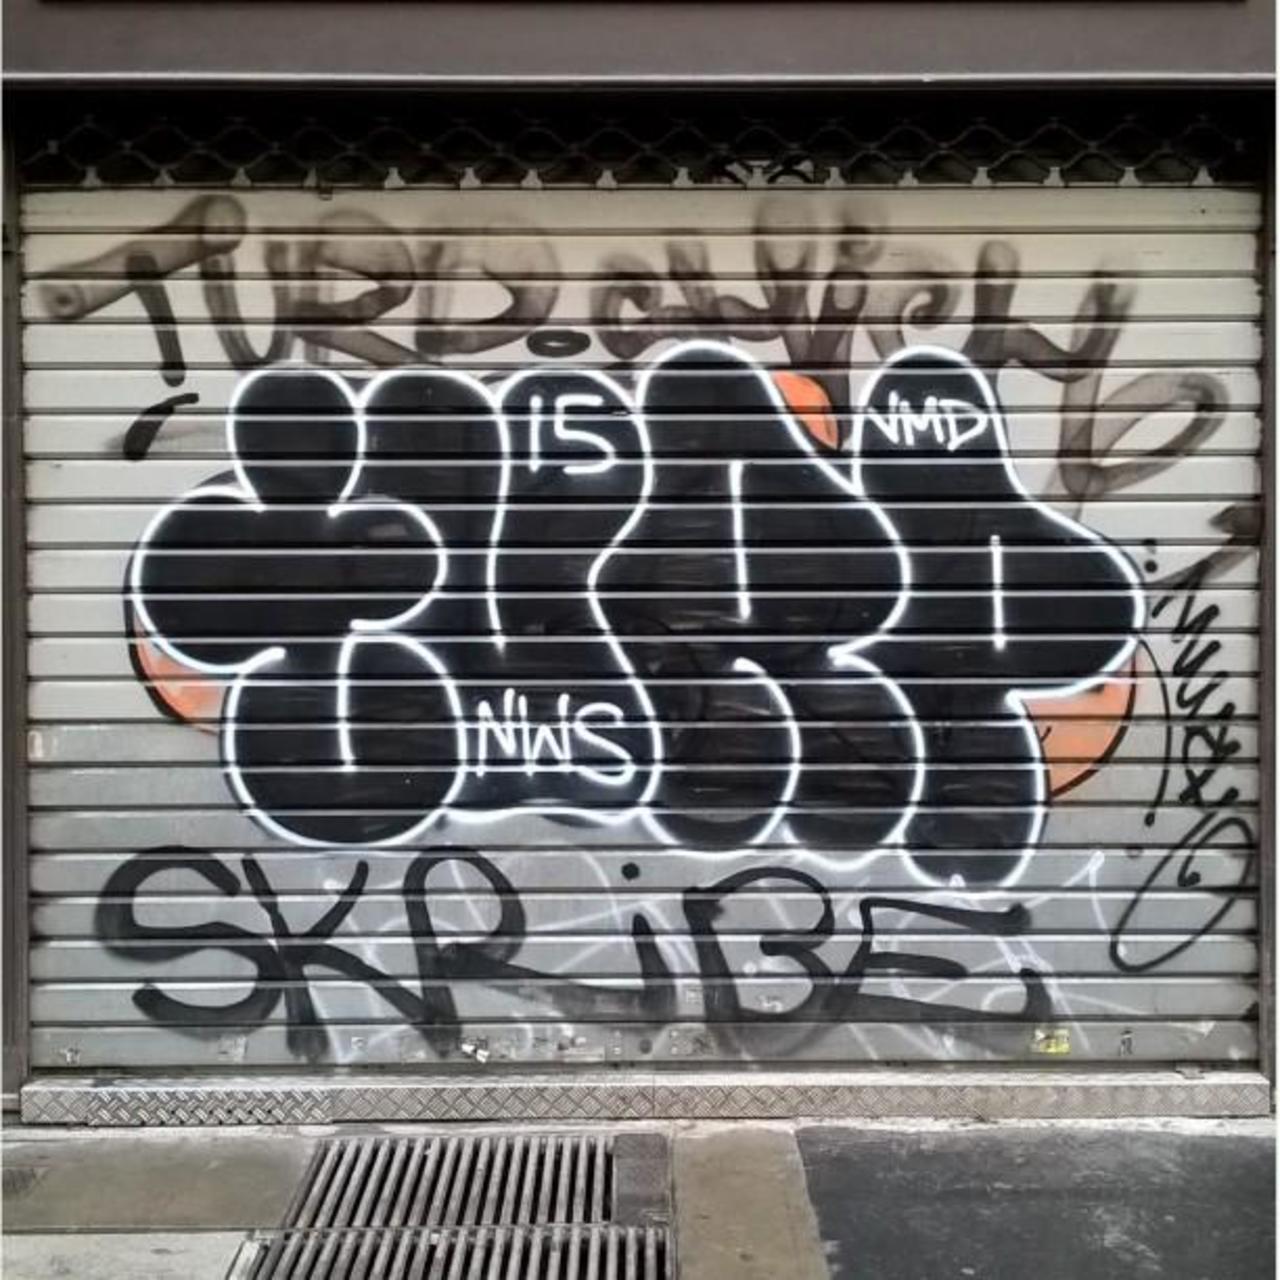 http://ift.tt/1KiqpQt #Paris #graffiti photo by maxdimontemarciano http://ift.tt/1RgAijt #StreetArt http://t.co/7Xpd3i0zqM